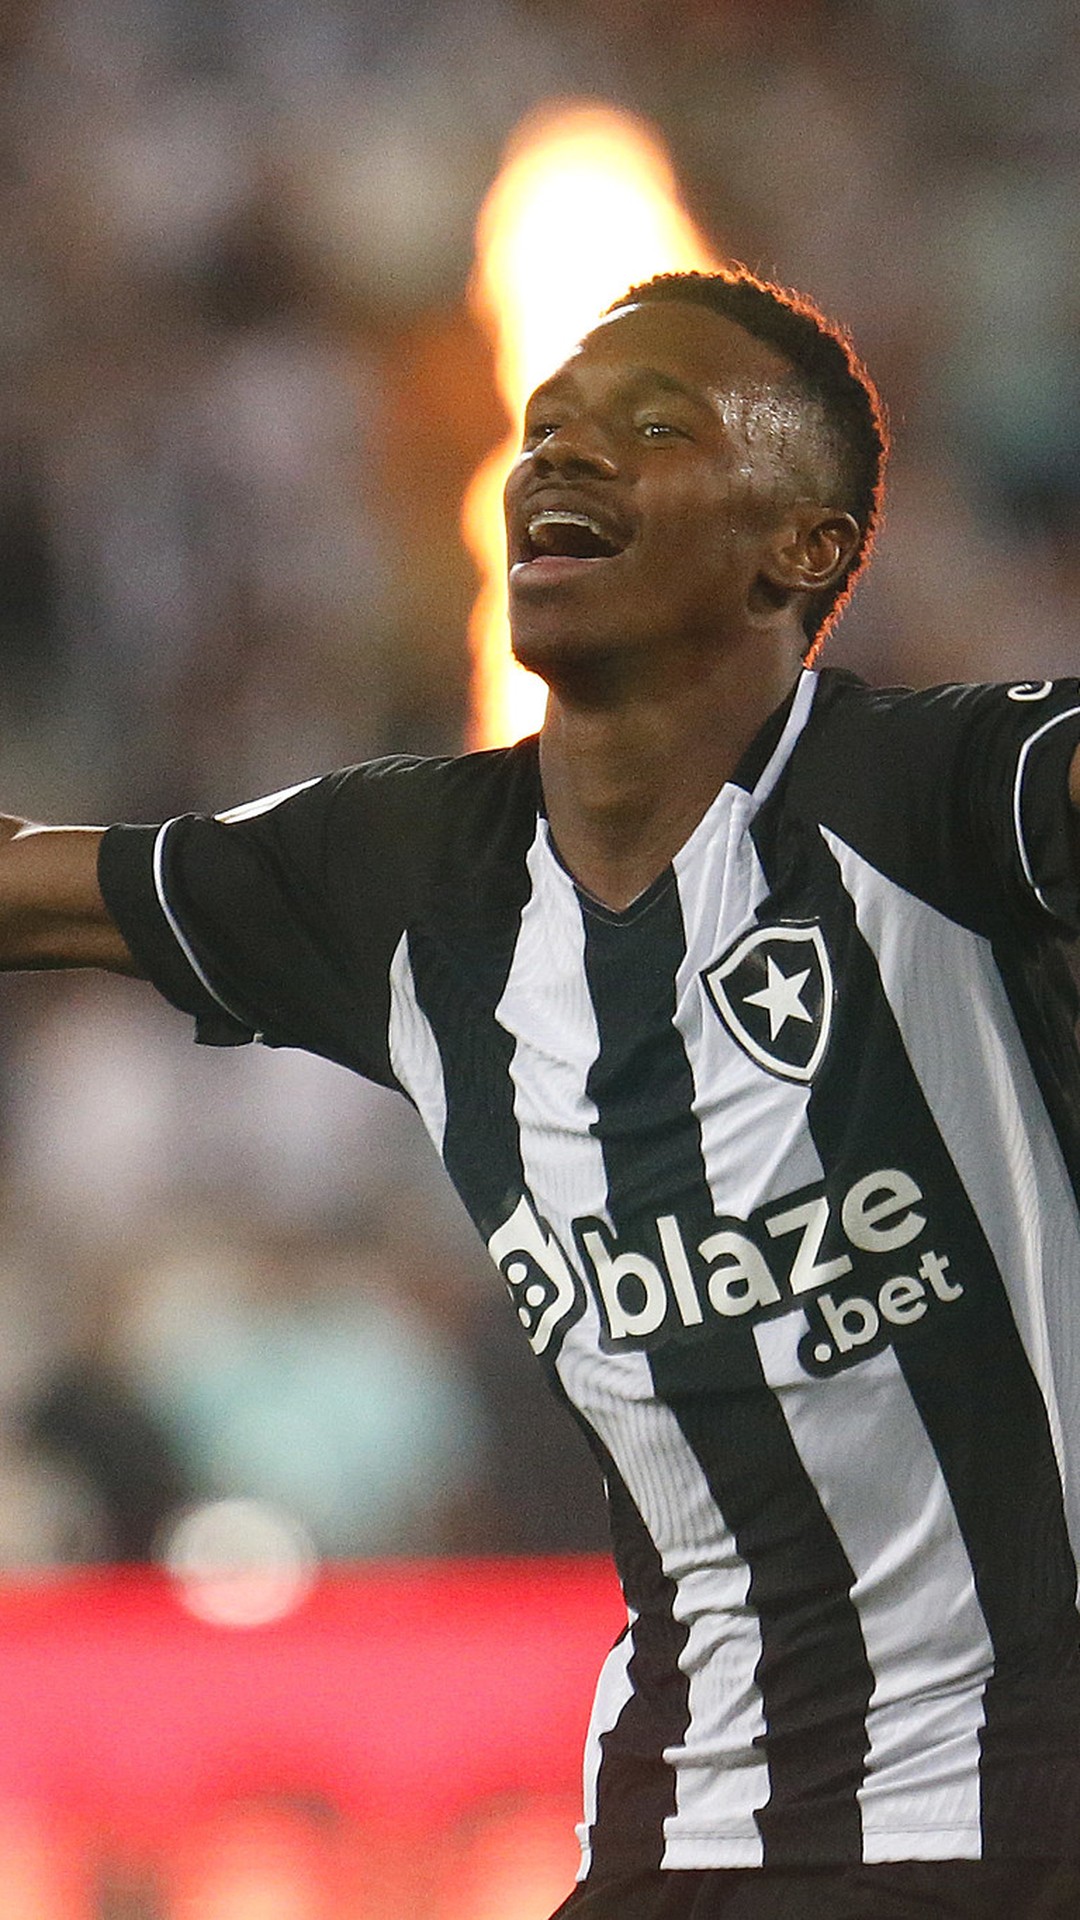 Acompanhe agora aqui o jogo entre Botafogo e Globo Futebol Clube